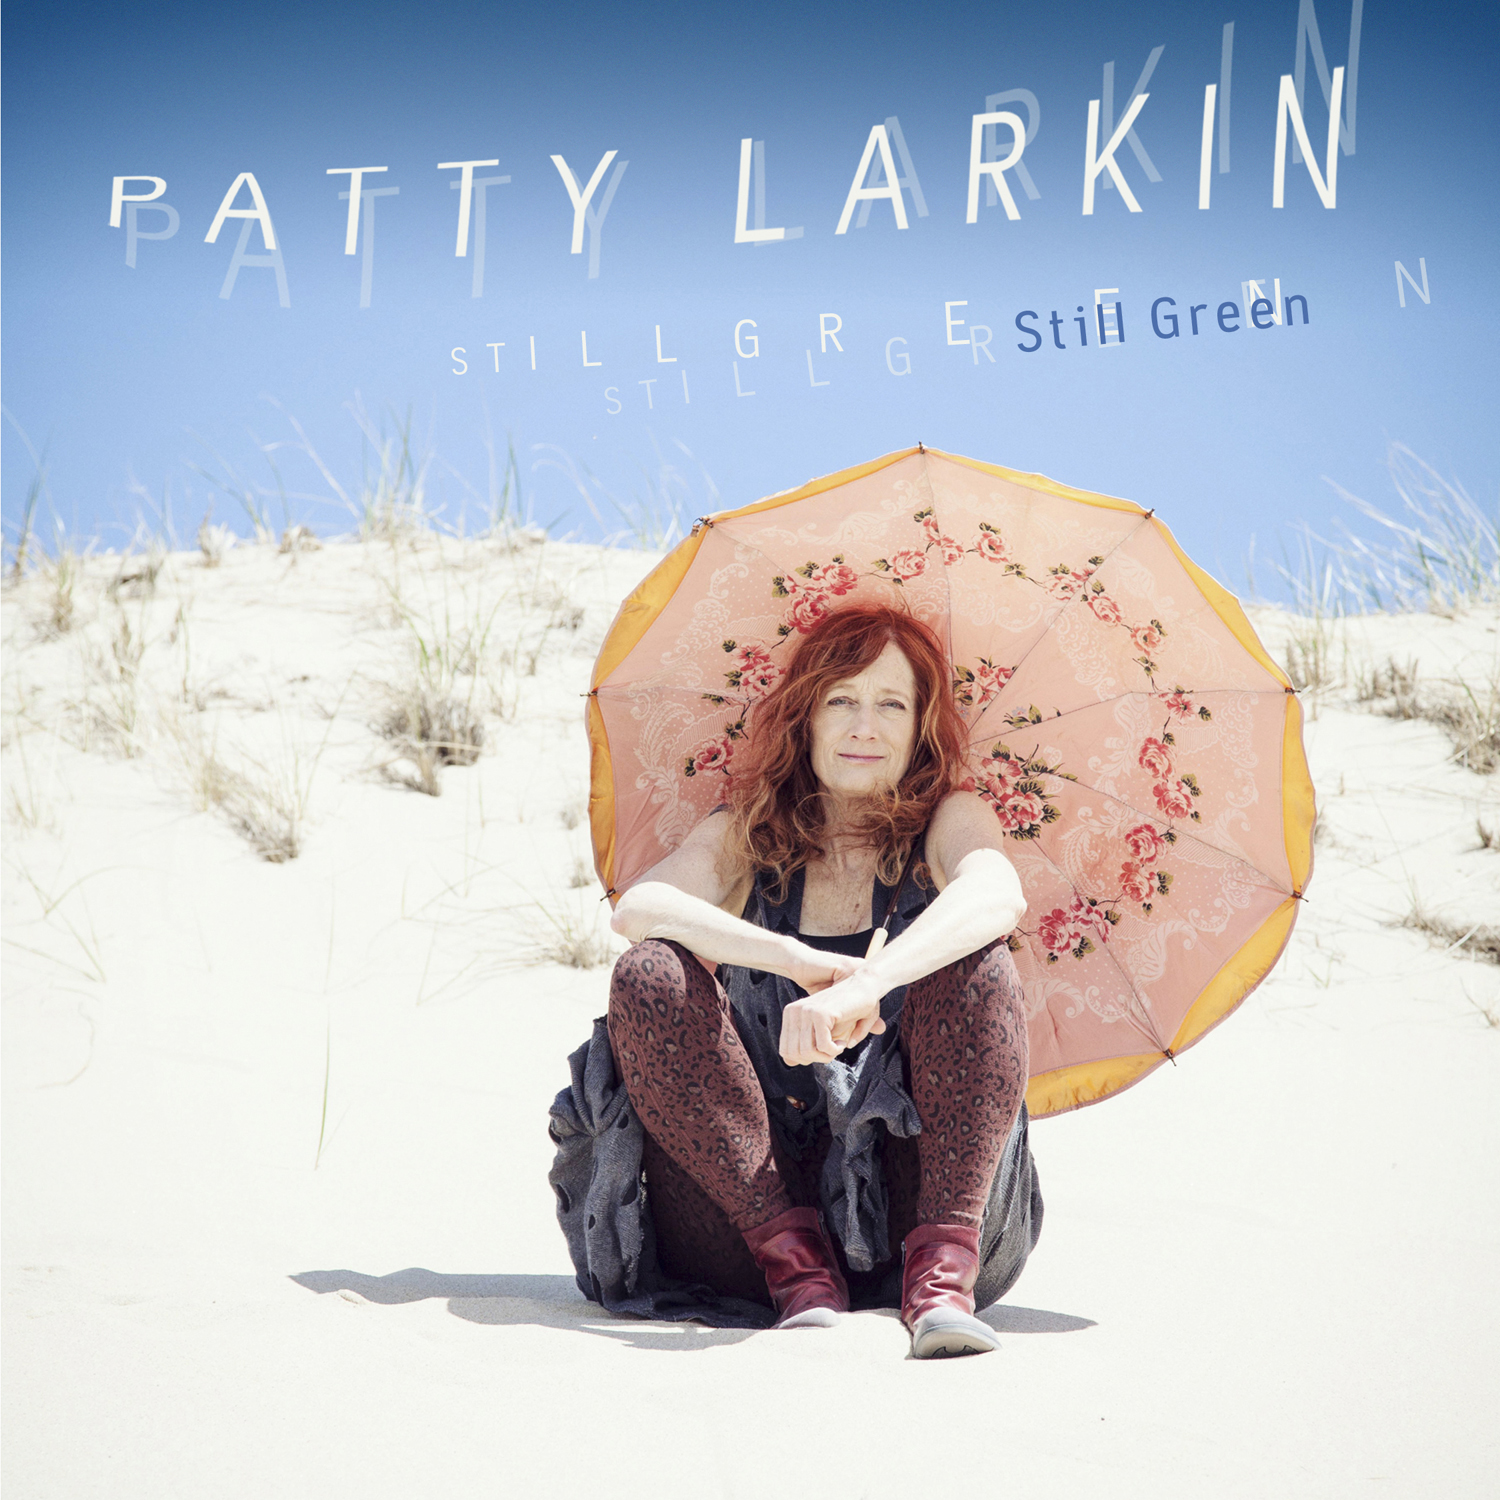 Patty Larkin - Publicity Images - 2013